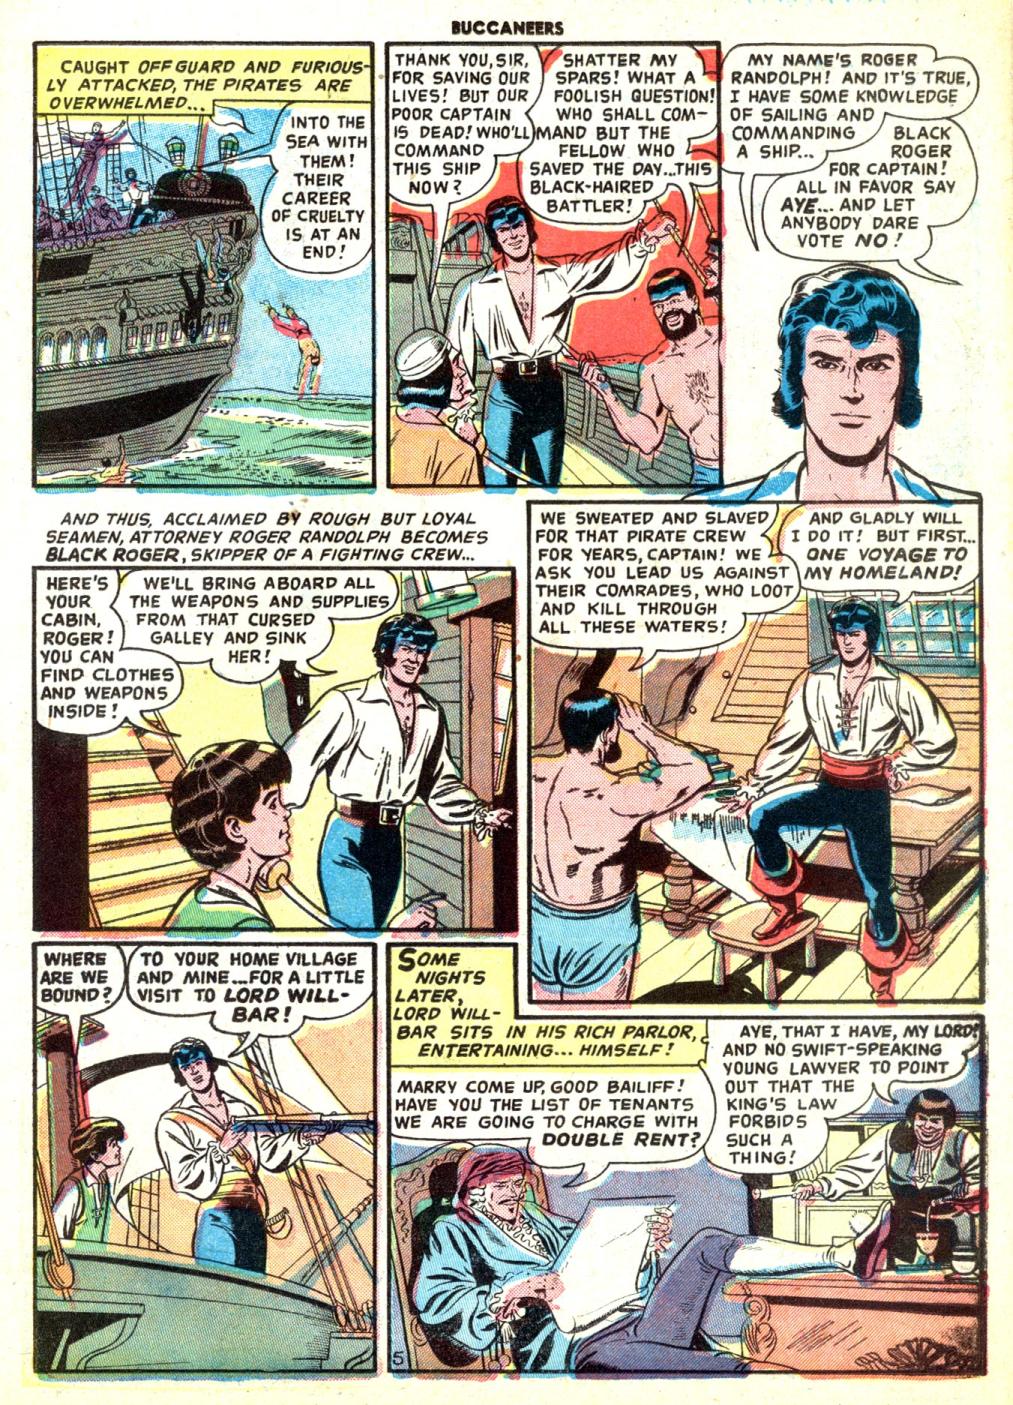 Read online Buccaneers comic -  Issue #19 - 31